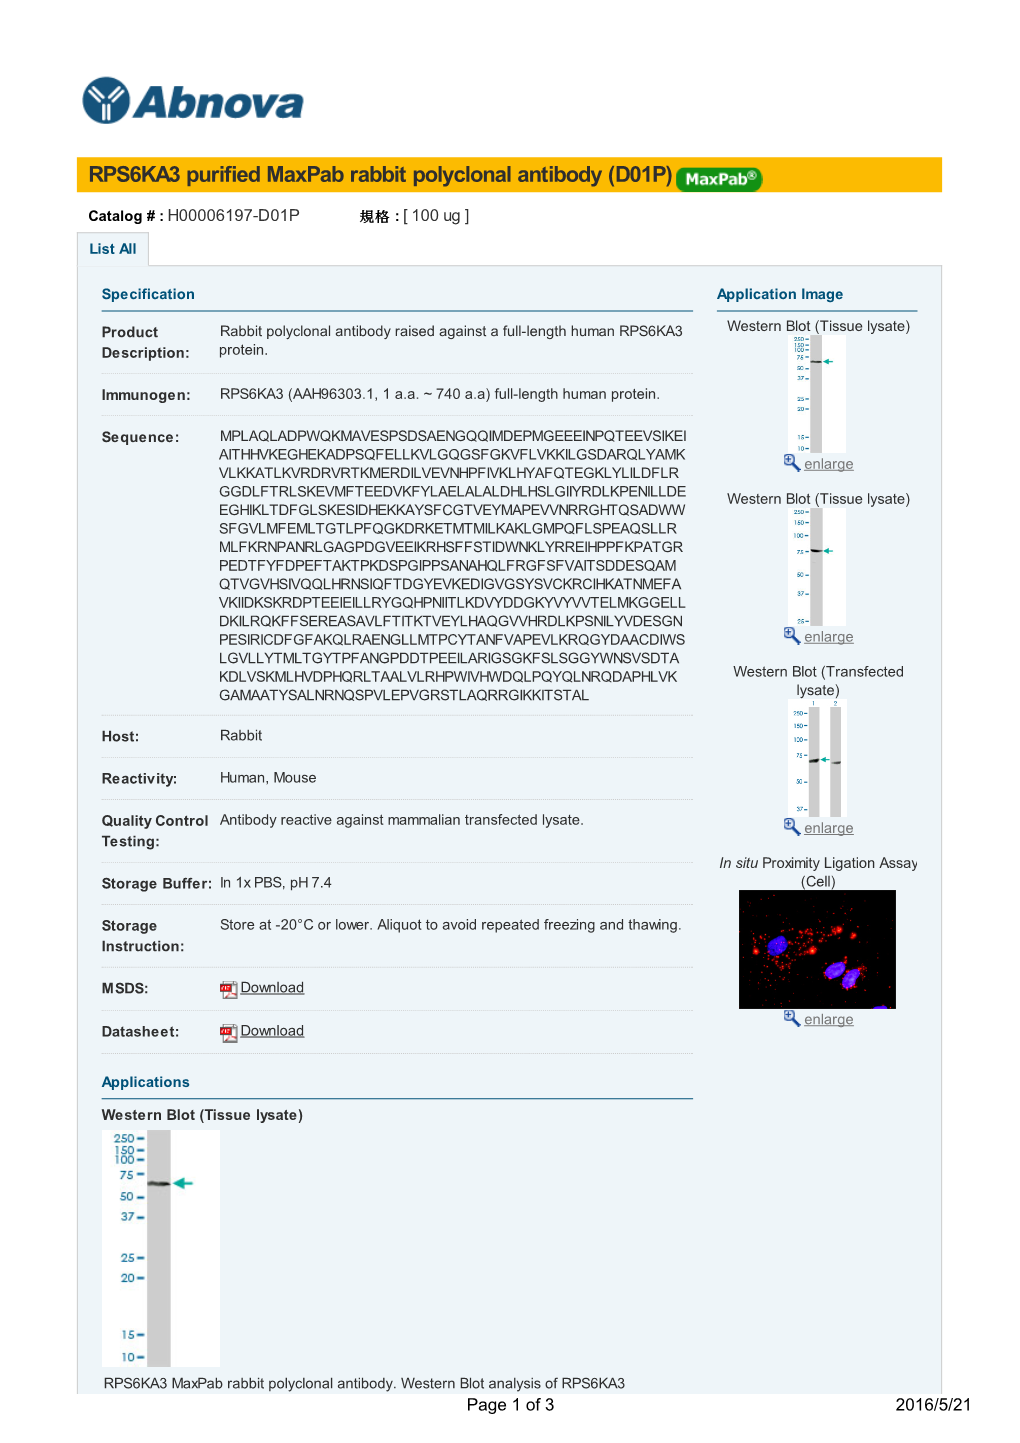 RPS6KA3 Purified Maxpab Rabbit Polyclonal Antibody (D01P)